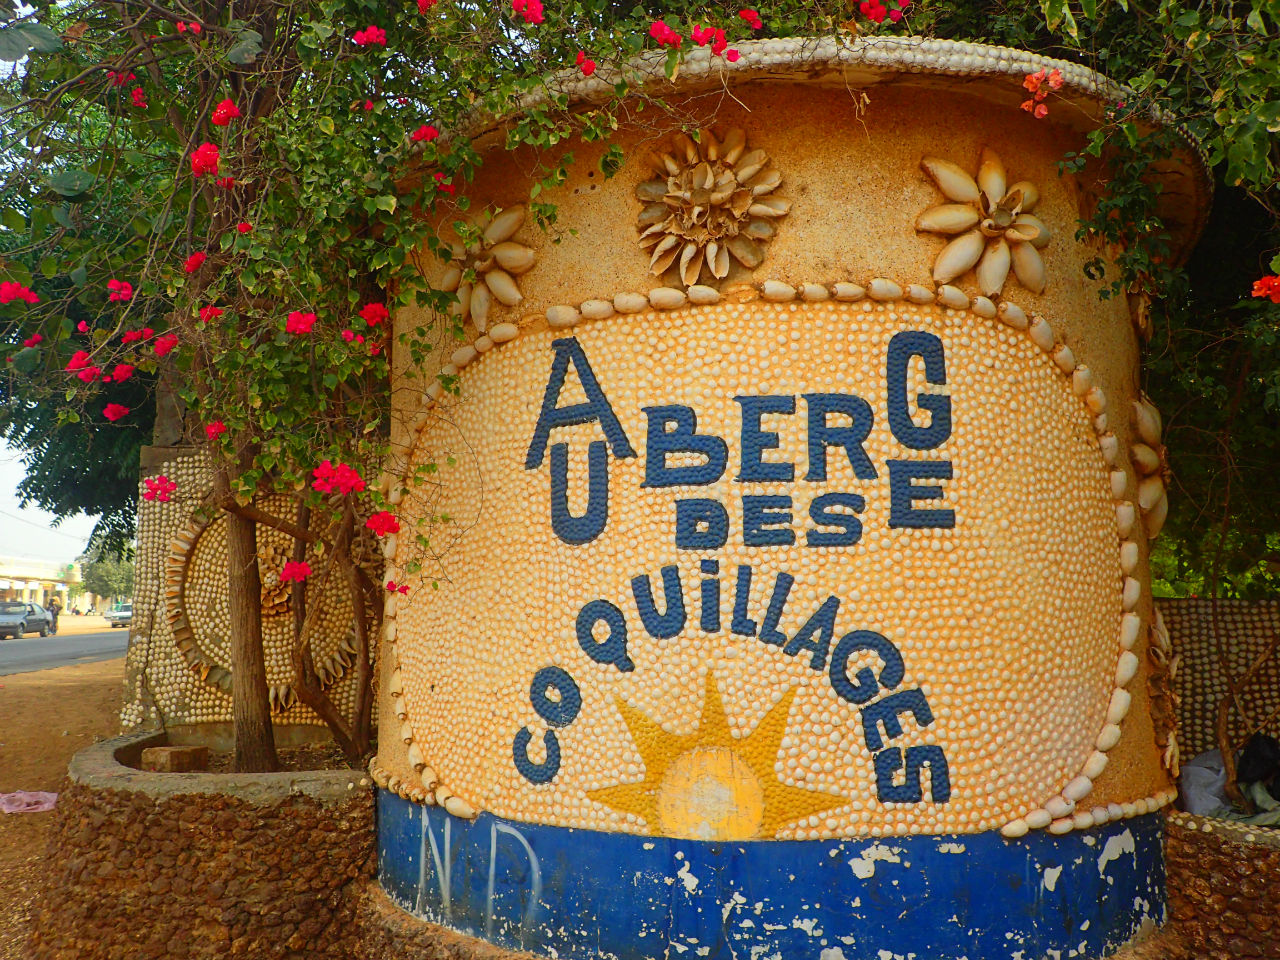 Посёлок Наньнин (Nanning). Побережье Сенегала Ньянинг, Сенегал